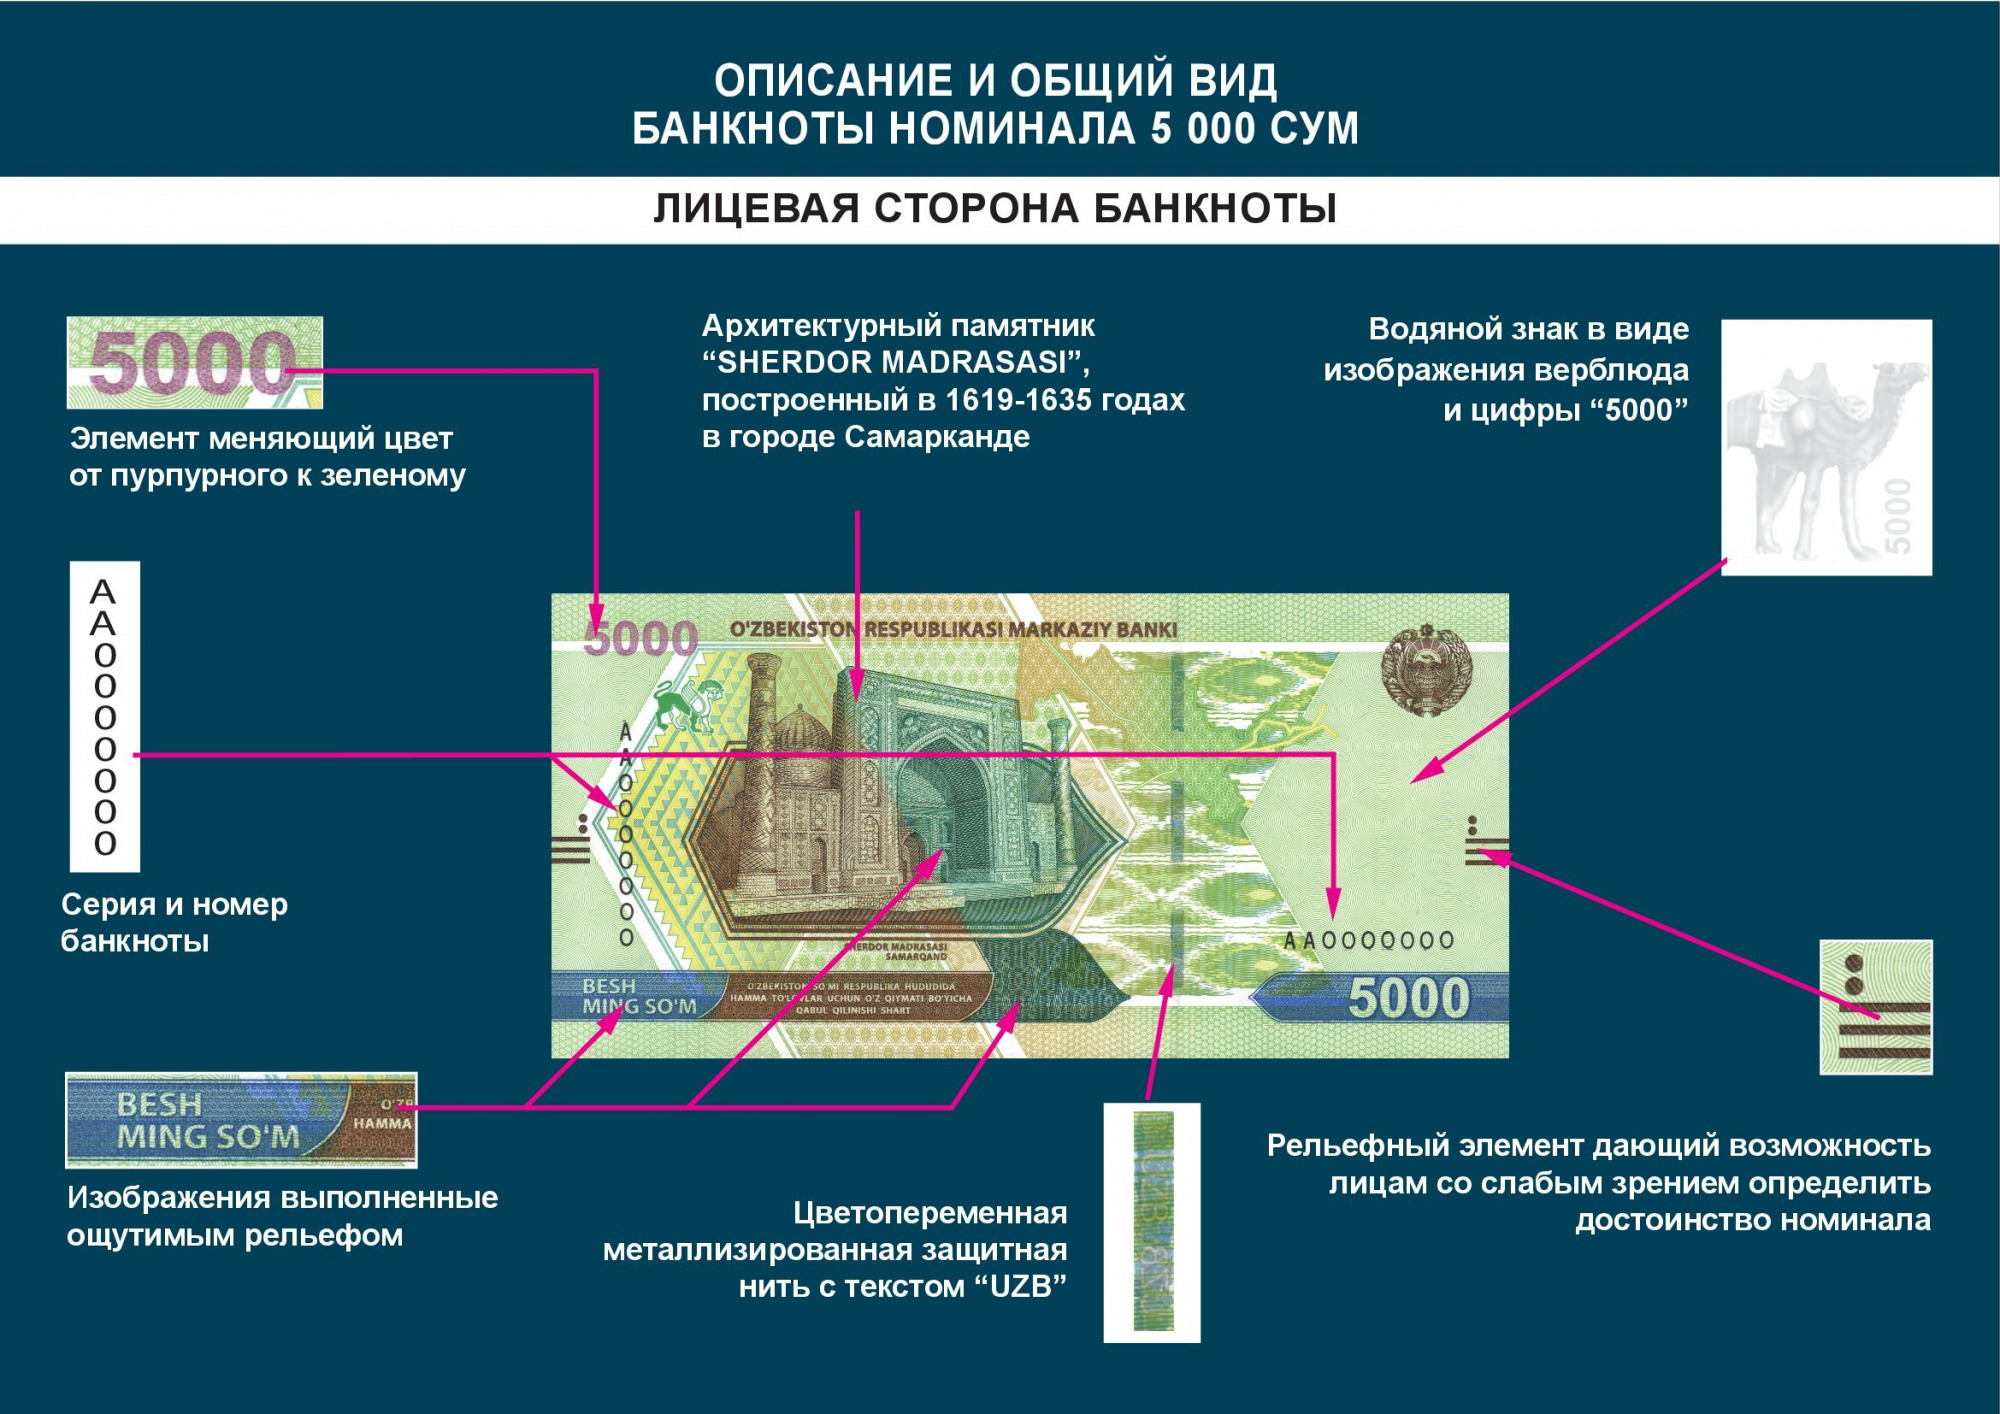 ЦБ опубликовал дизайн новых образцов банкнот ценностью 5 и 10 тысяч сумов